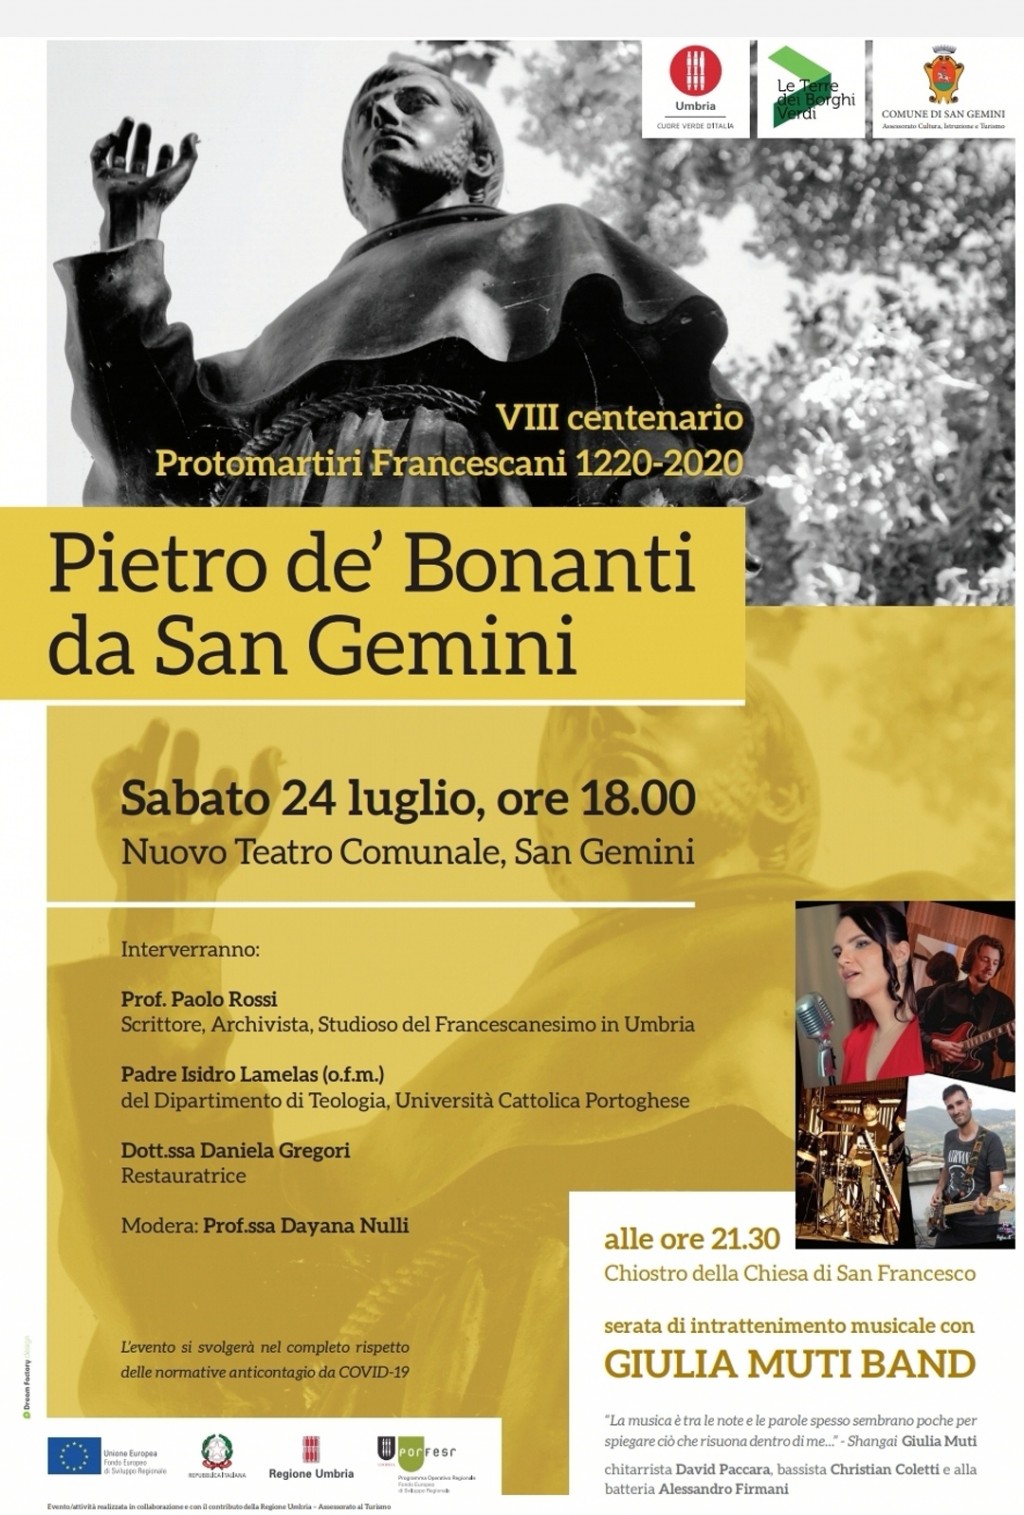 immagine SABATO 24 LUGLIO Conferenza e Concerto "Pietro de' Bonanti da San Gemini" e Giulia Muti Band